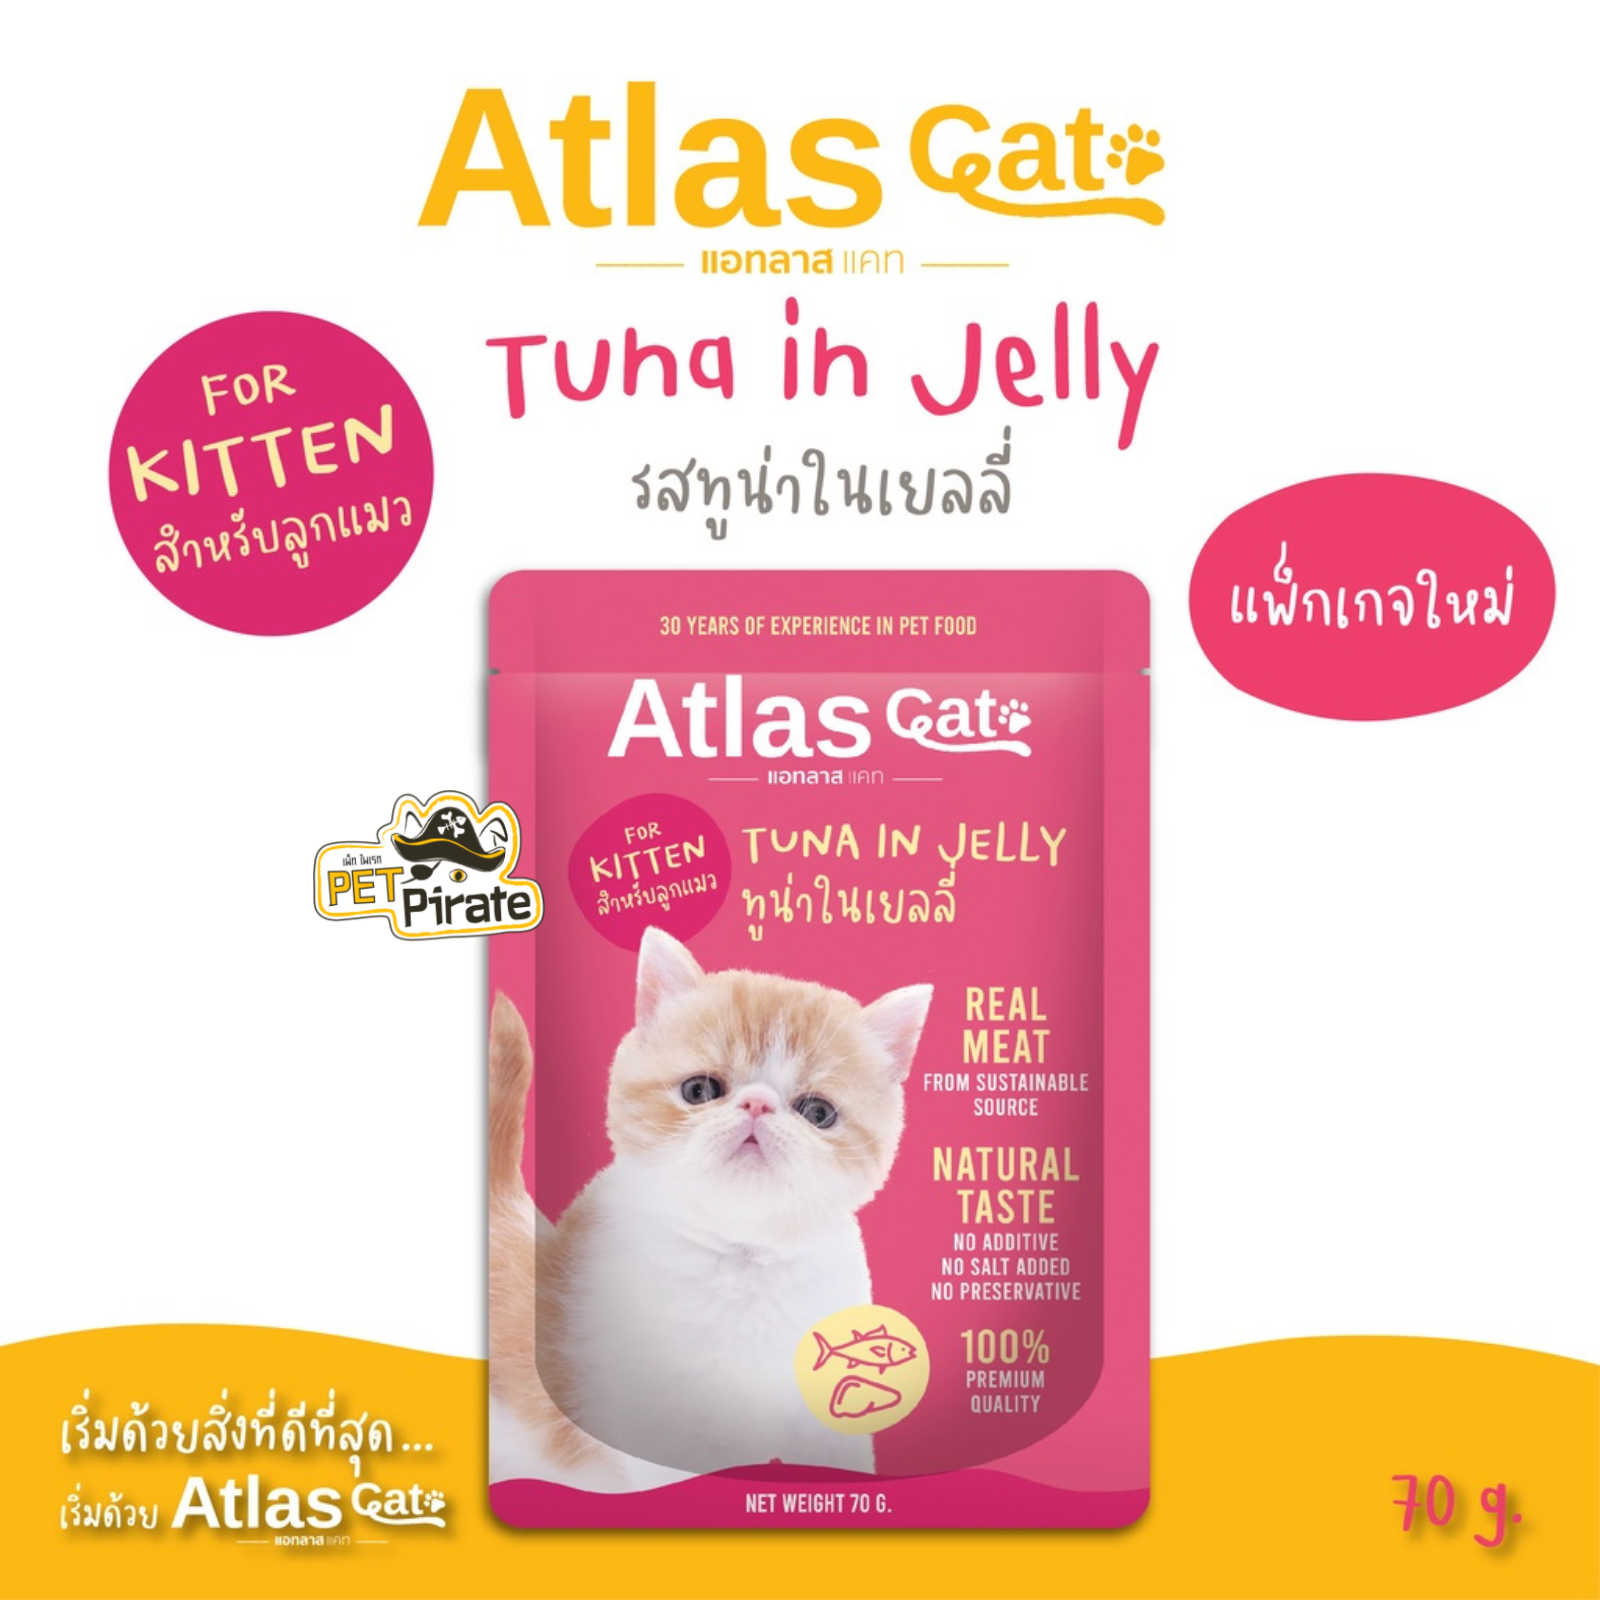 Atlas Cat อาหารเปียกลูกแมว ทูน่าในเยลลี่ ทำจากเนื้อปลาทูน่าเนื้อดี เหมาะสำหรับลูกแมวอายุ 2 เดือน - 1ปี อาหารแมว 70 g